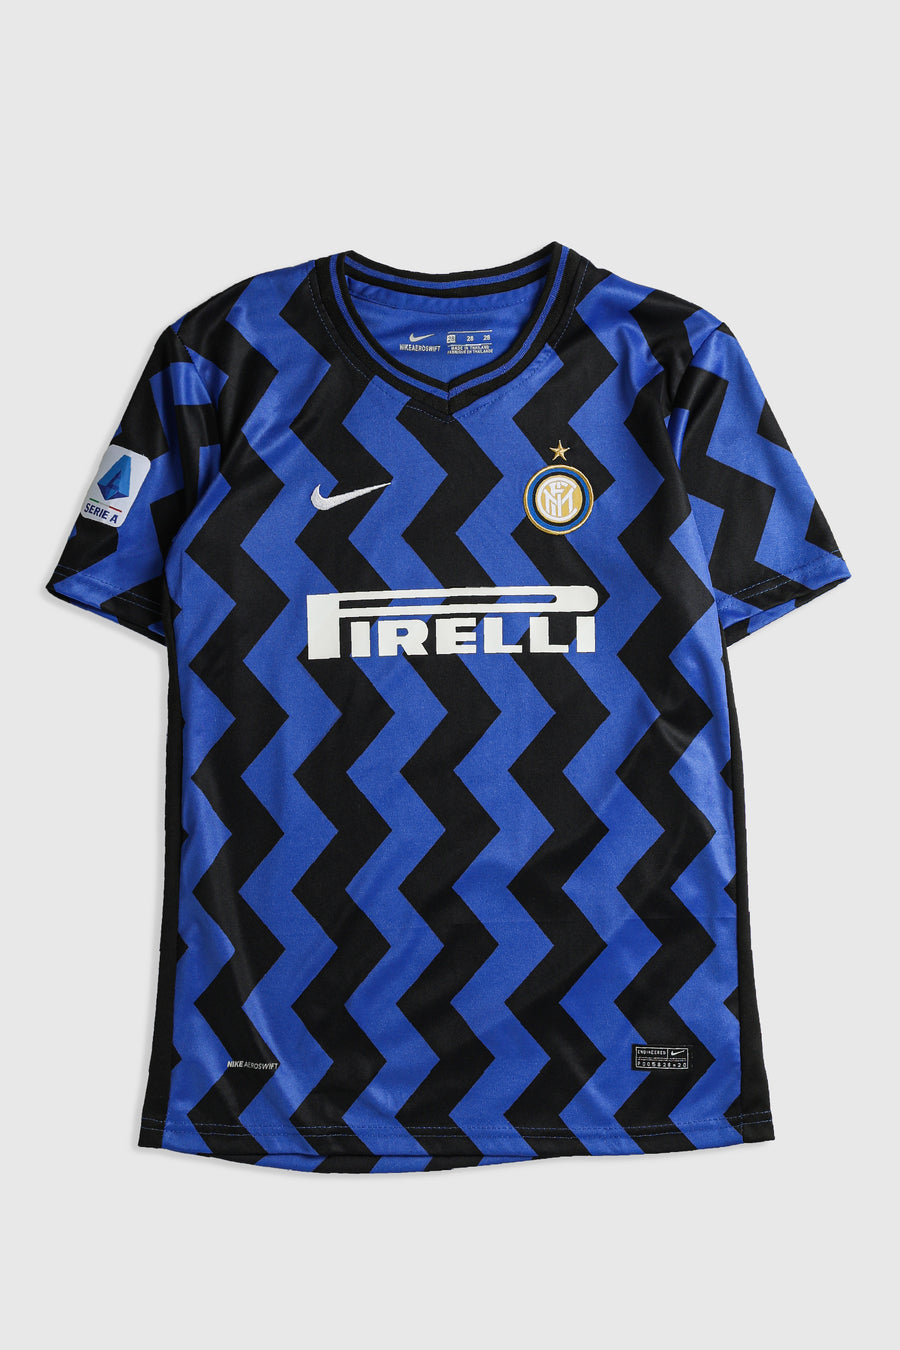 Vintage Inter Milan Soccer Jersey